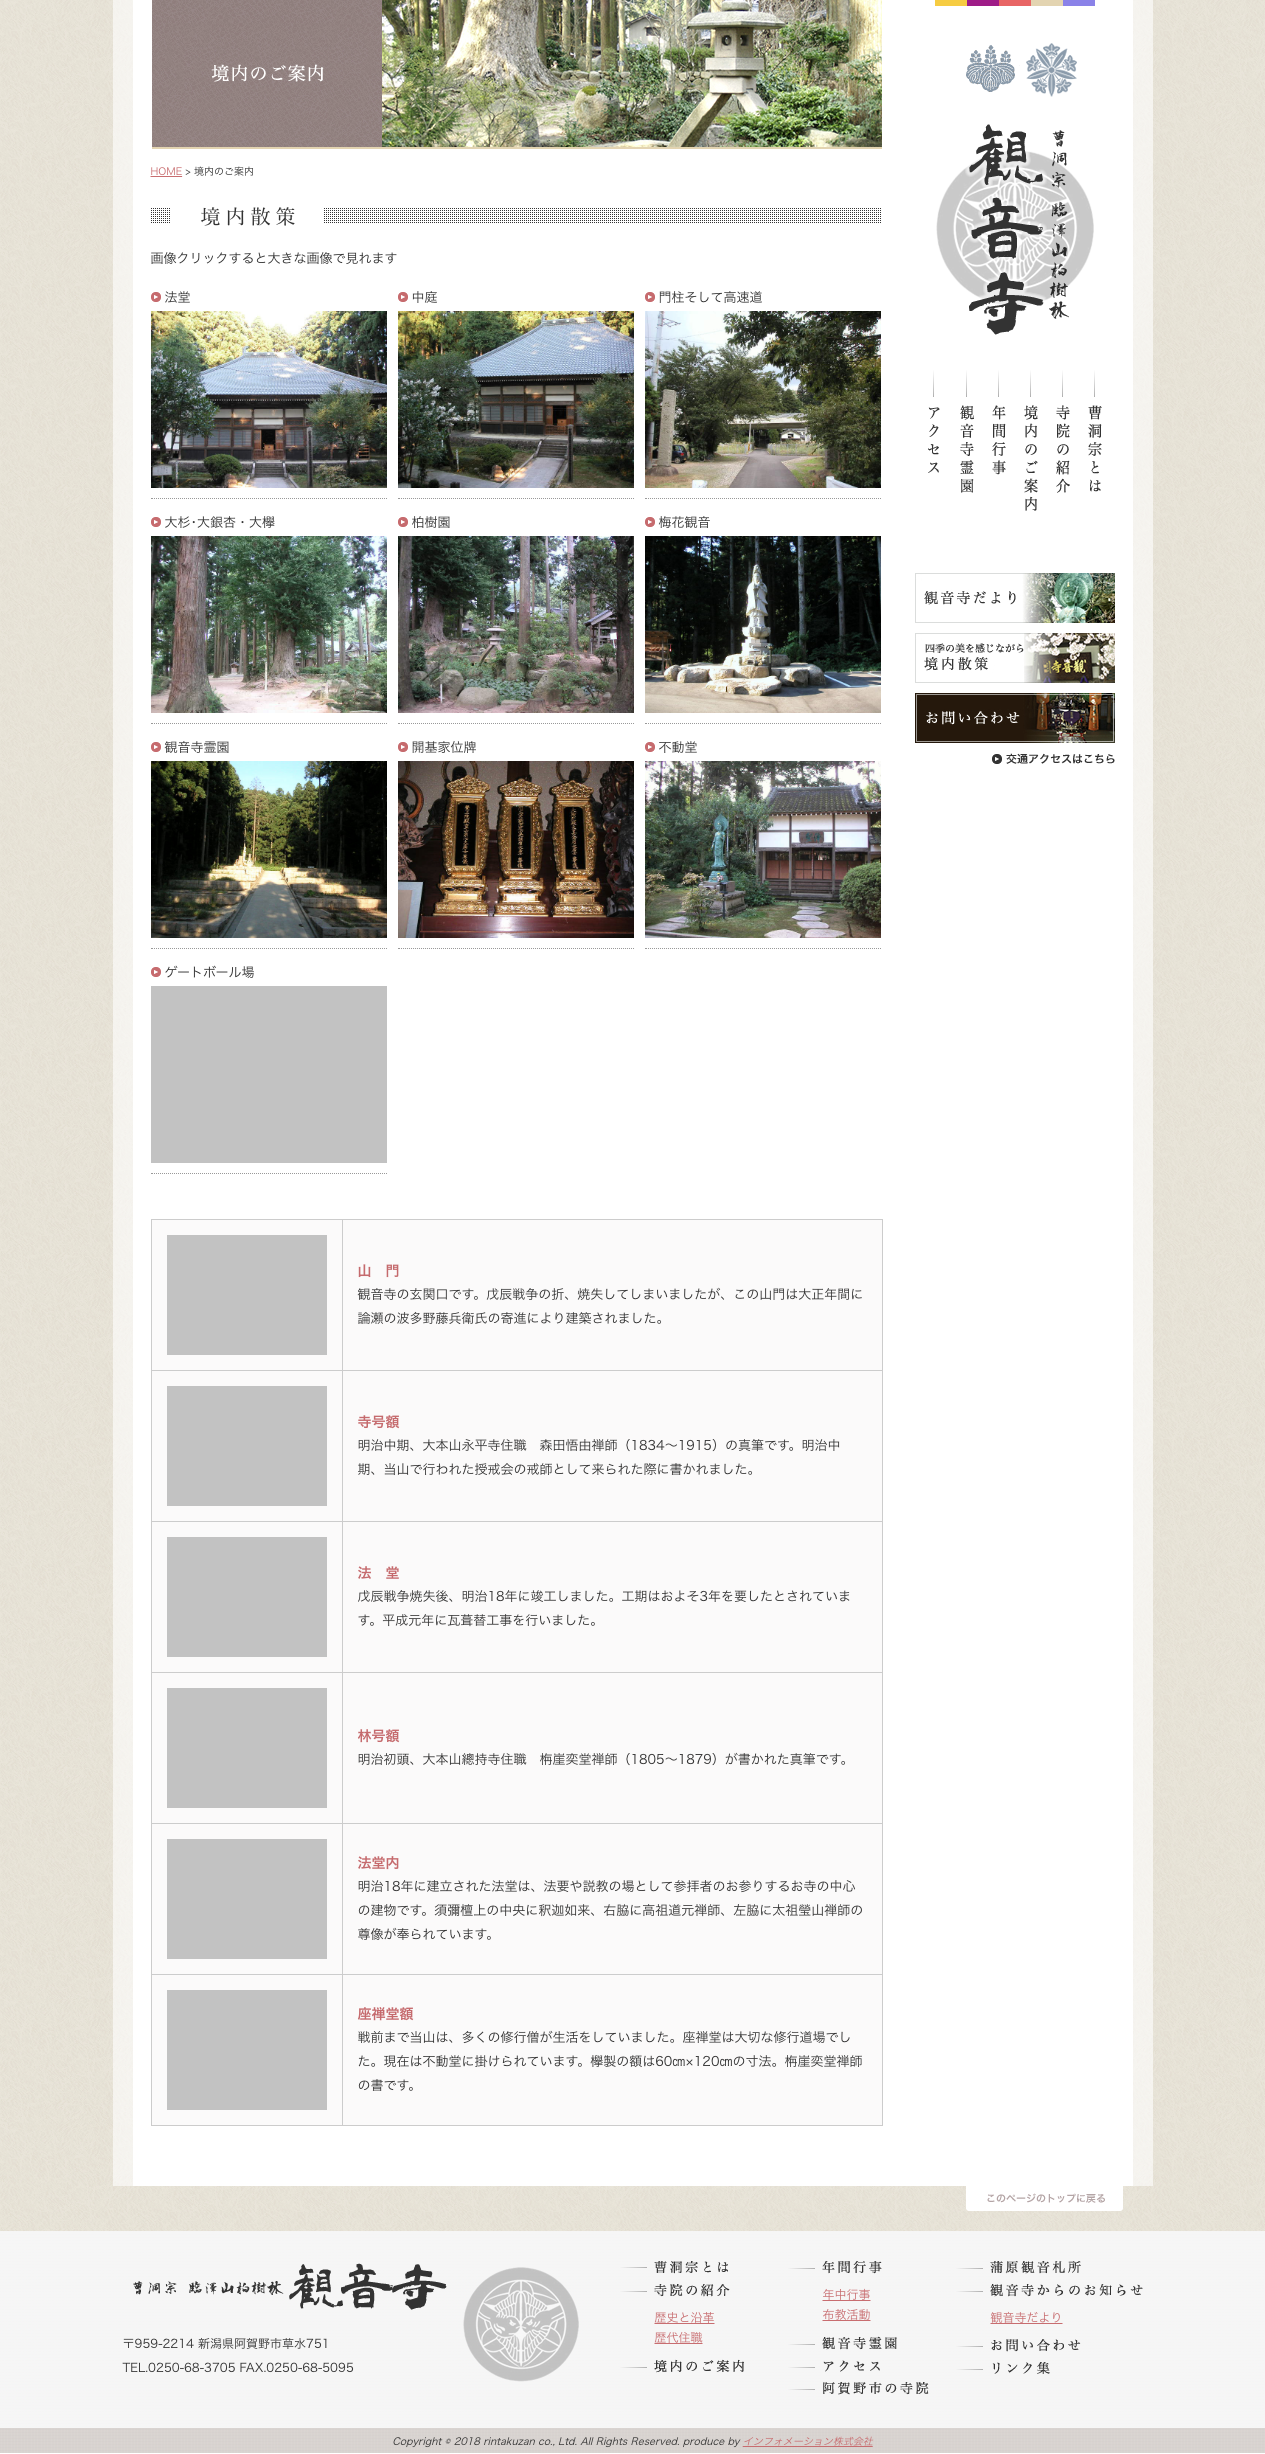 曹洞宗 臨澤山柏樹林 観音寺 様のホームページ